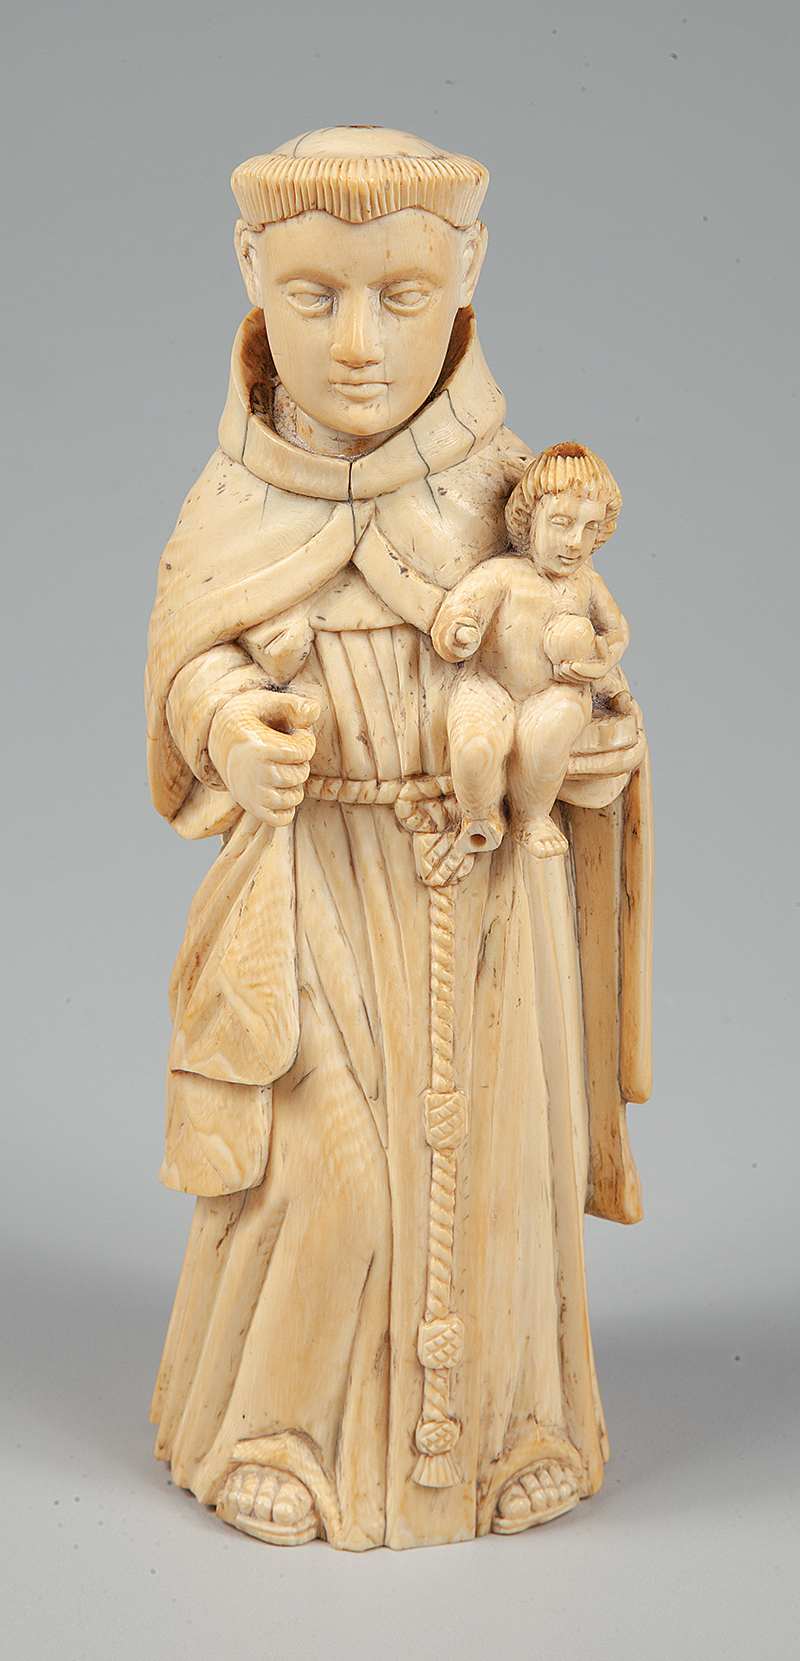 São José com menino Jesus imagem de Goa medindo 19 cm. de altura ` Séc. XVIII.